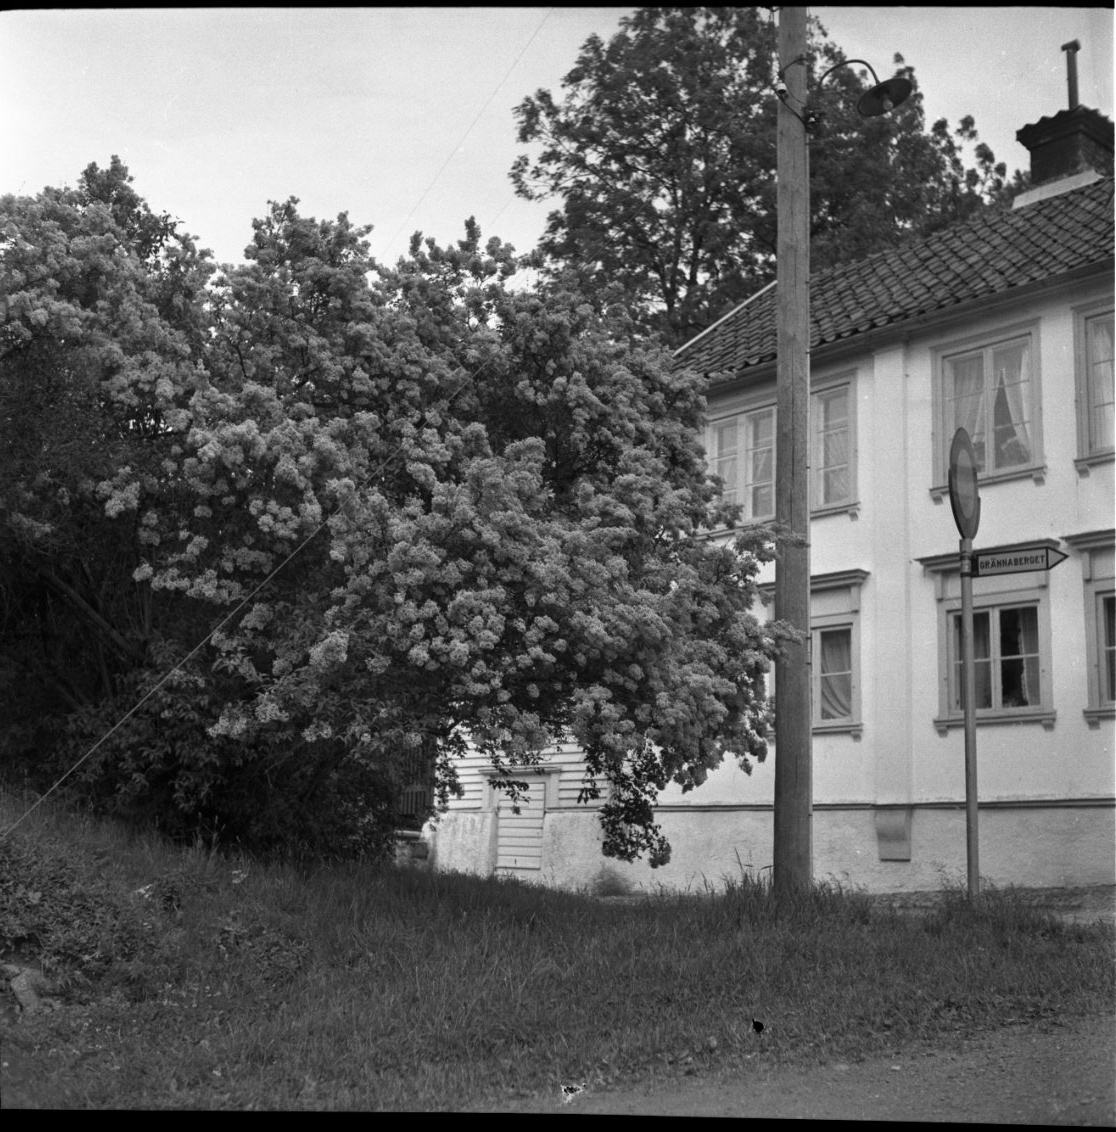 Fotografi av så kallade Eckerbergska fastigheten, vars norra del är skymd av ett träd.